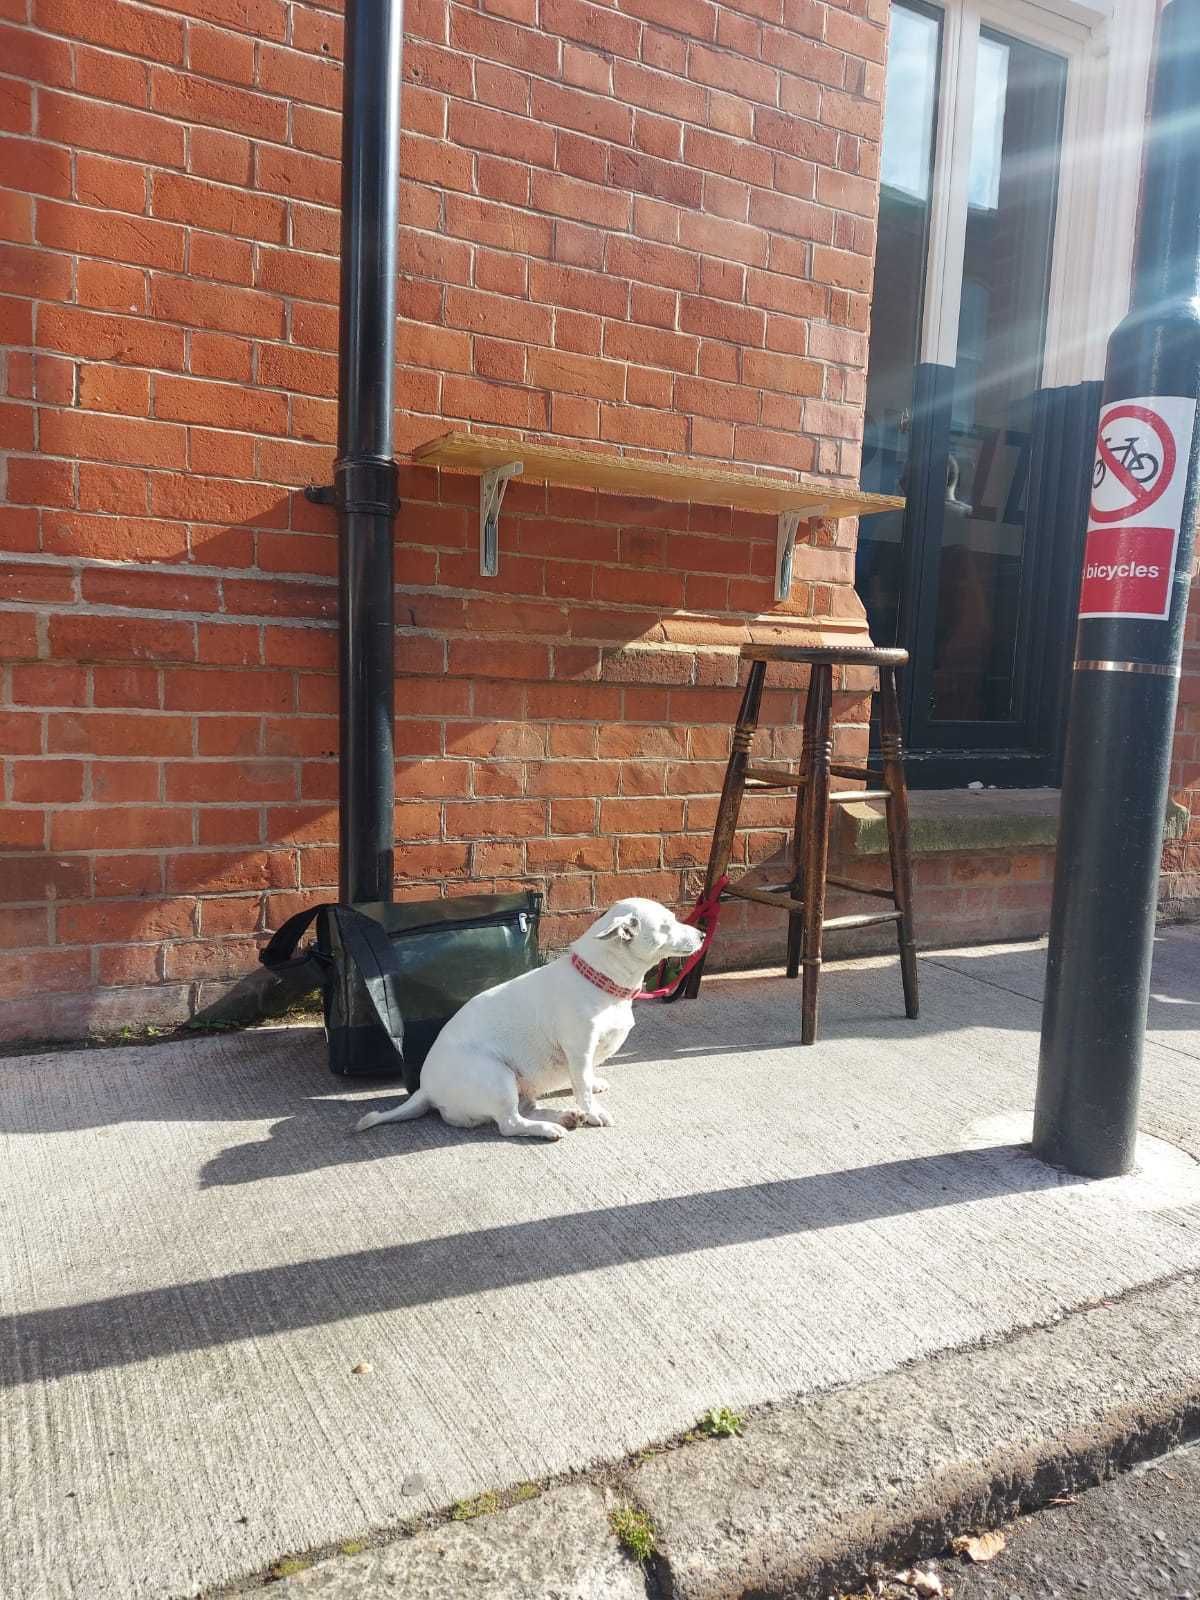 My dog at the pub